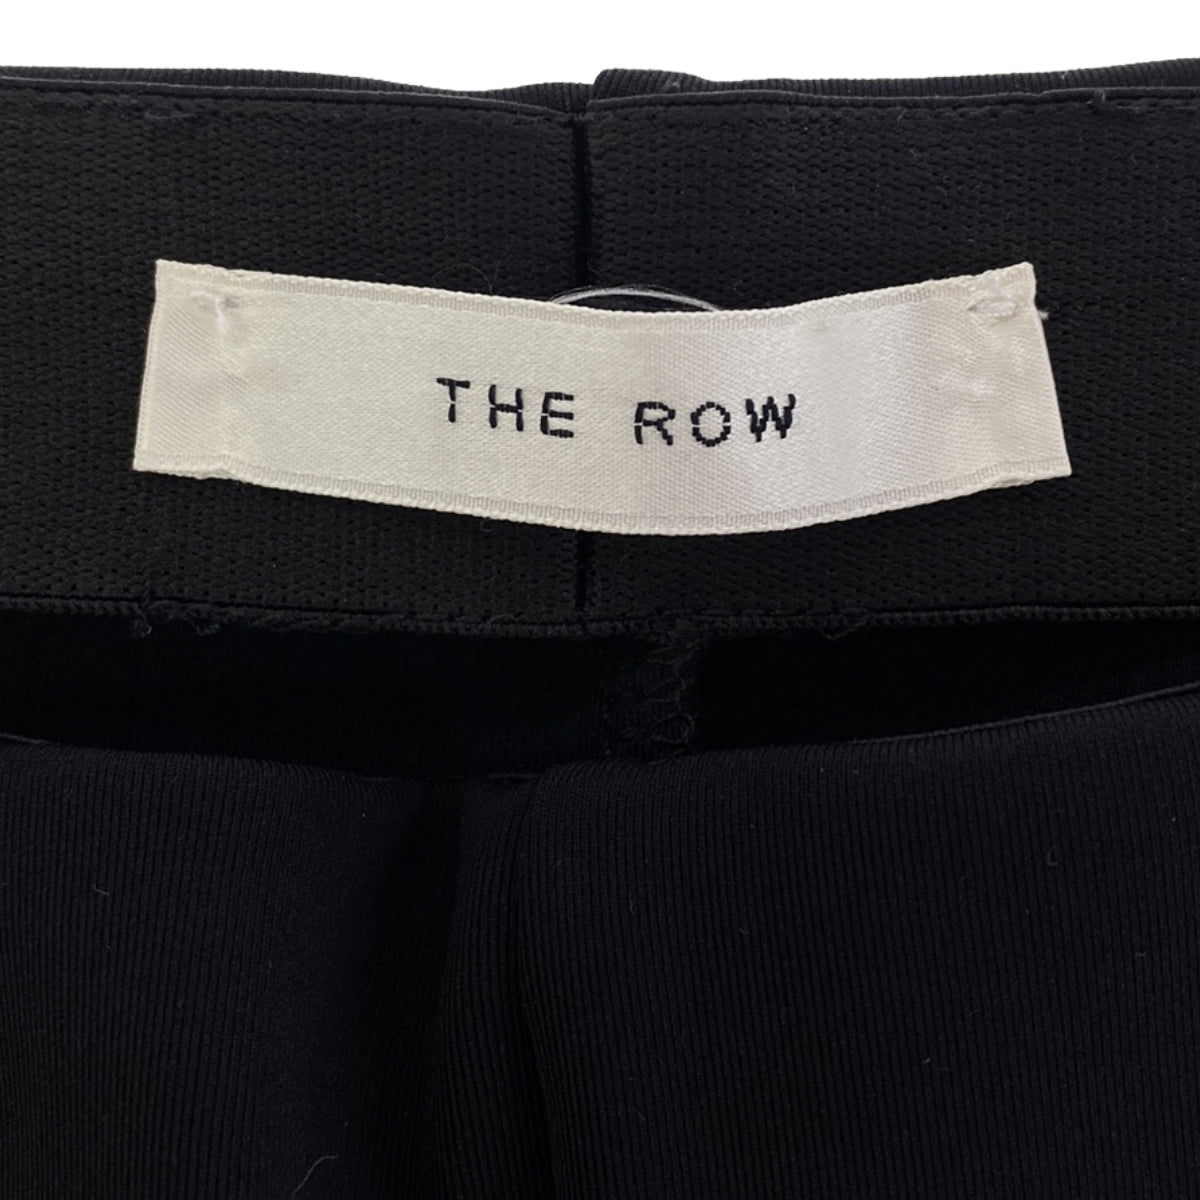 THE ROW / ザロウ | THILDE PANT レギンスパンツ | S | レディース